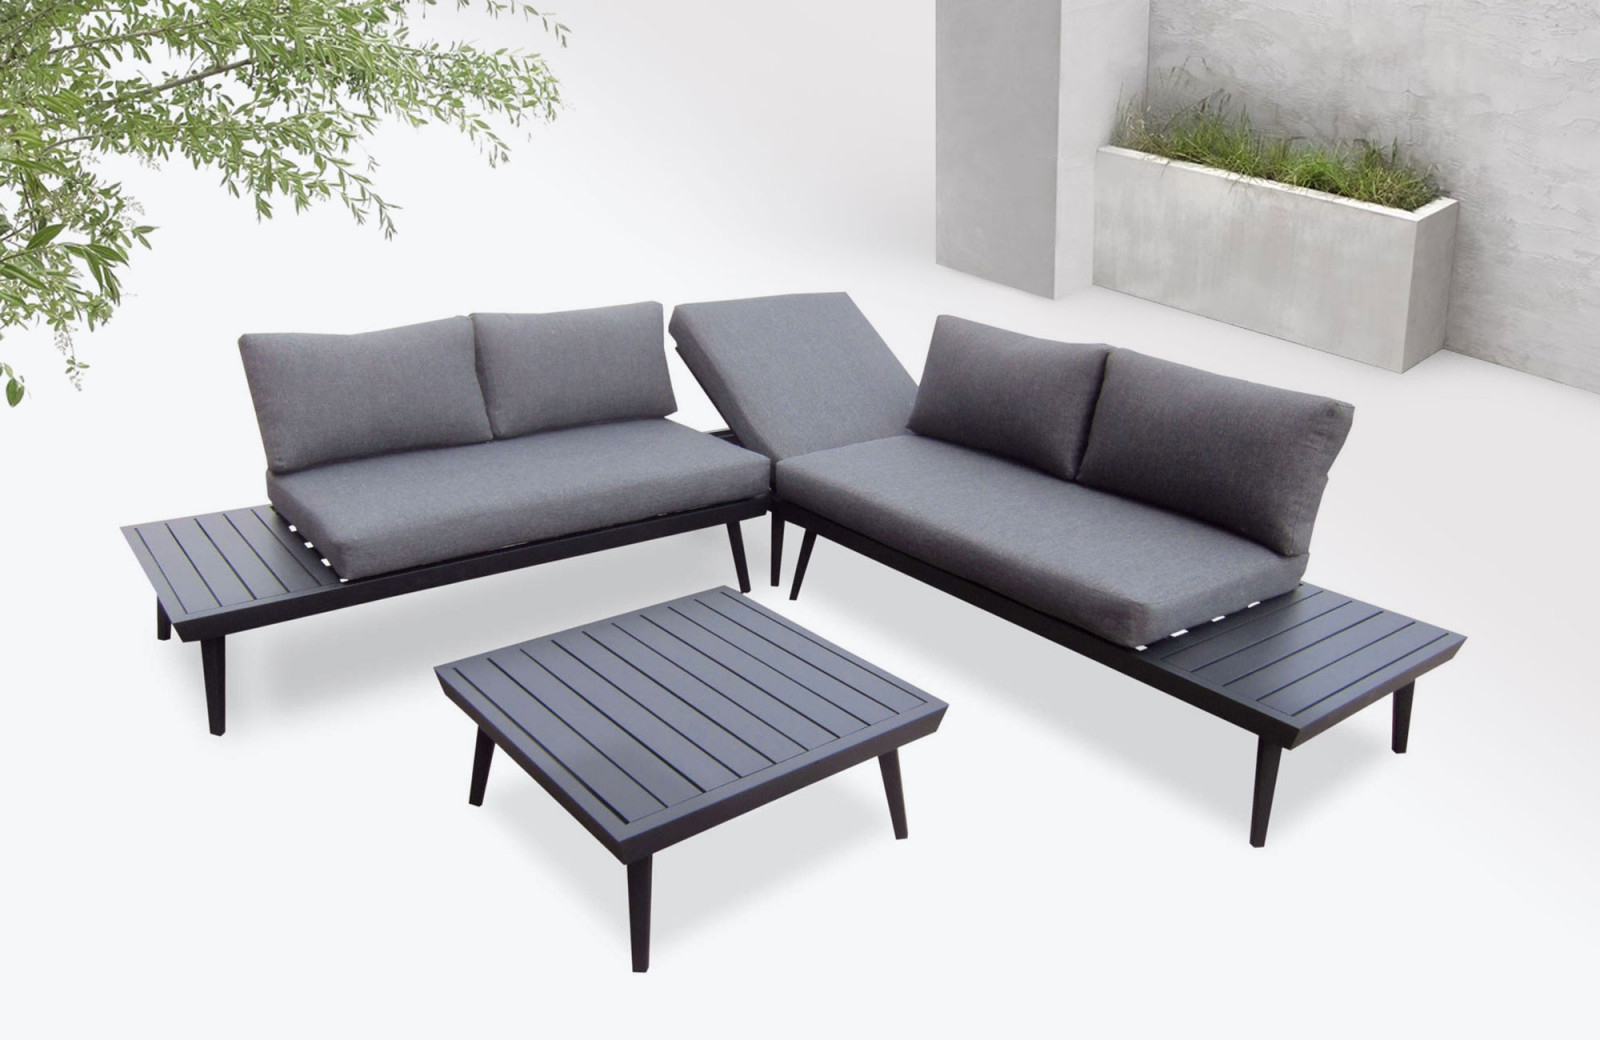 Garden Furniture Aluminium Vigo | Bobochic ® tout Salon De Jardin Aluminium